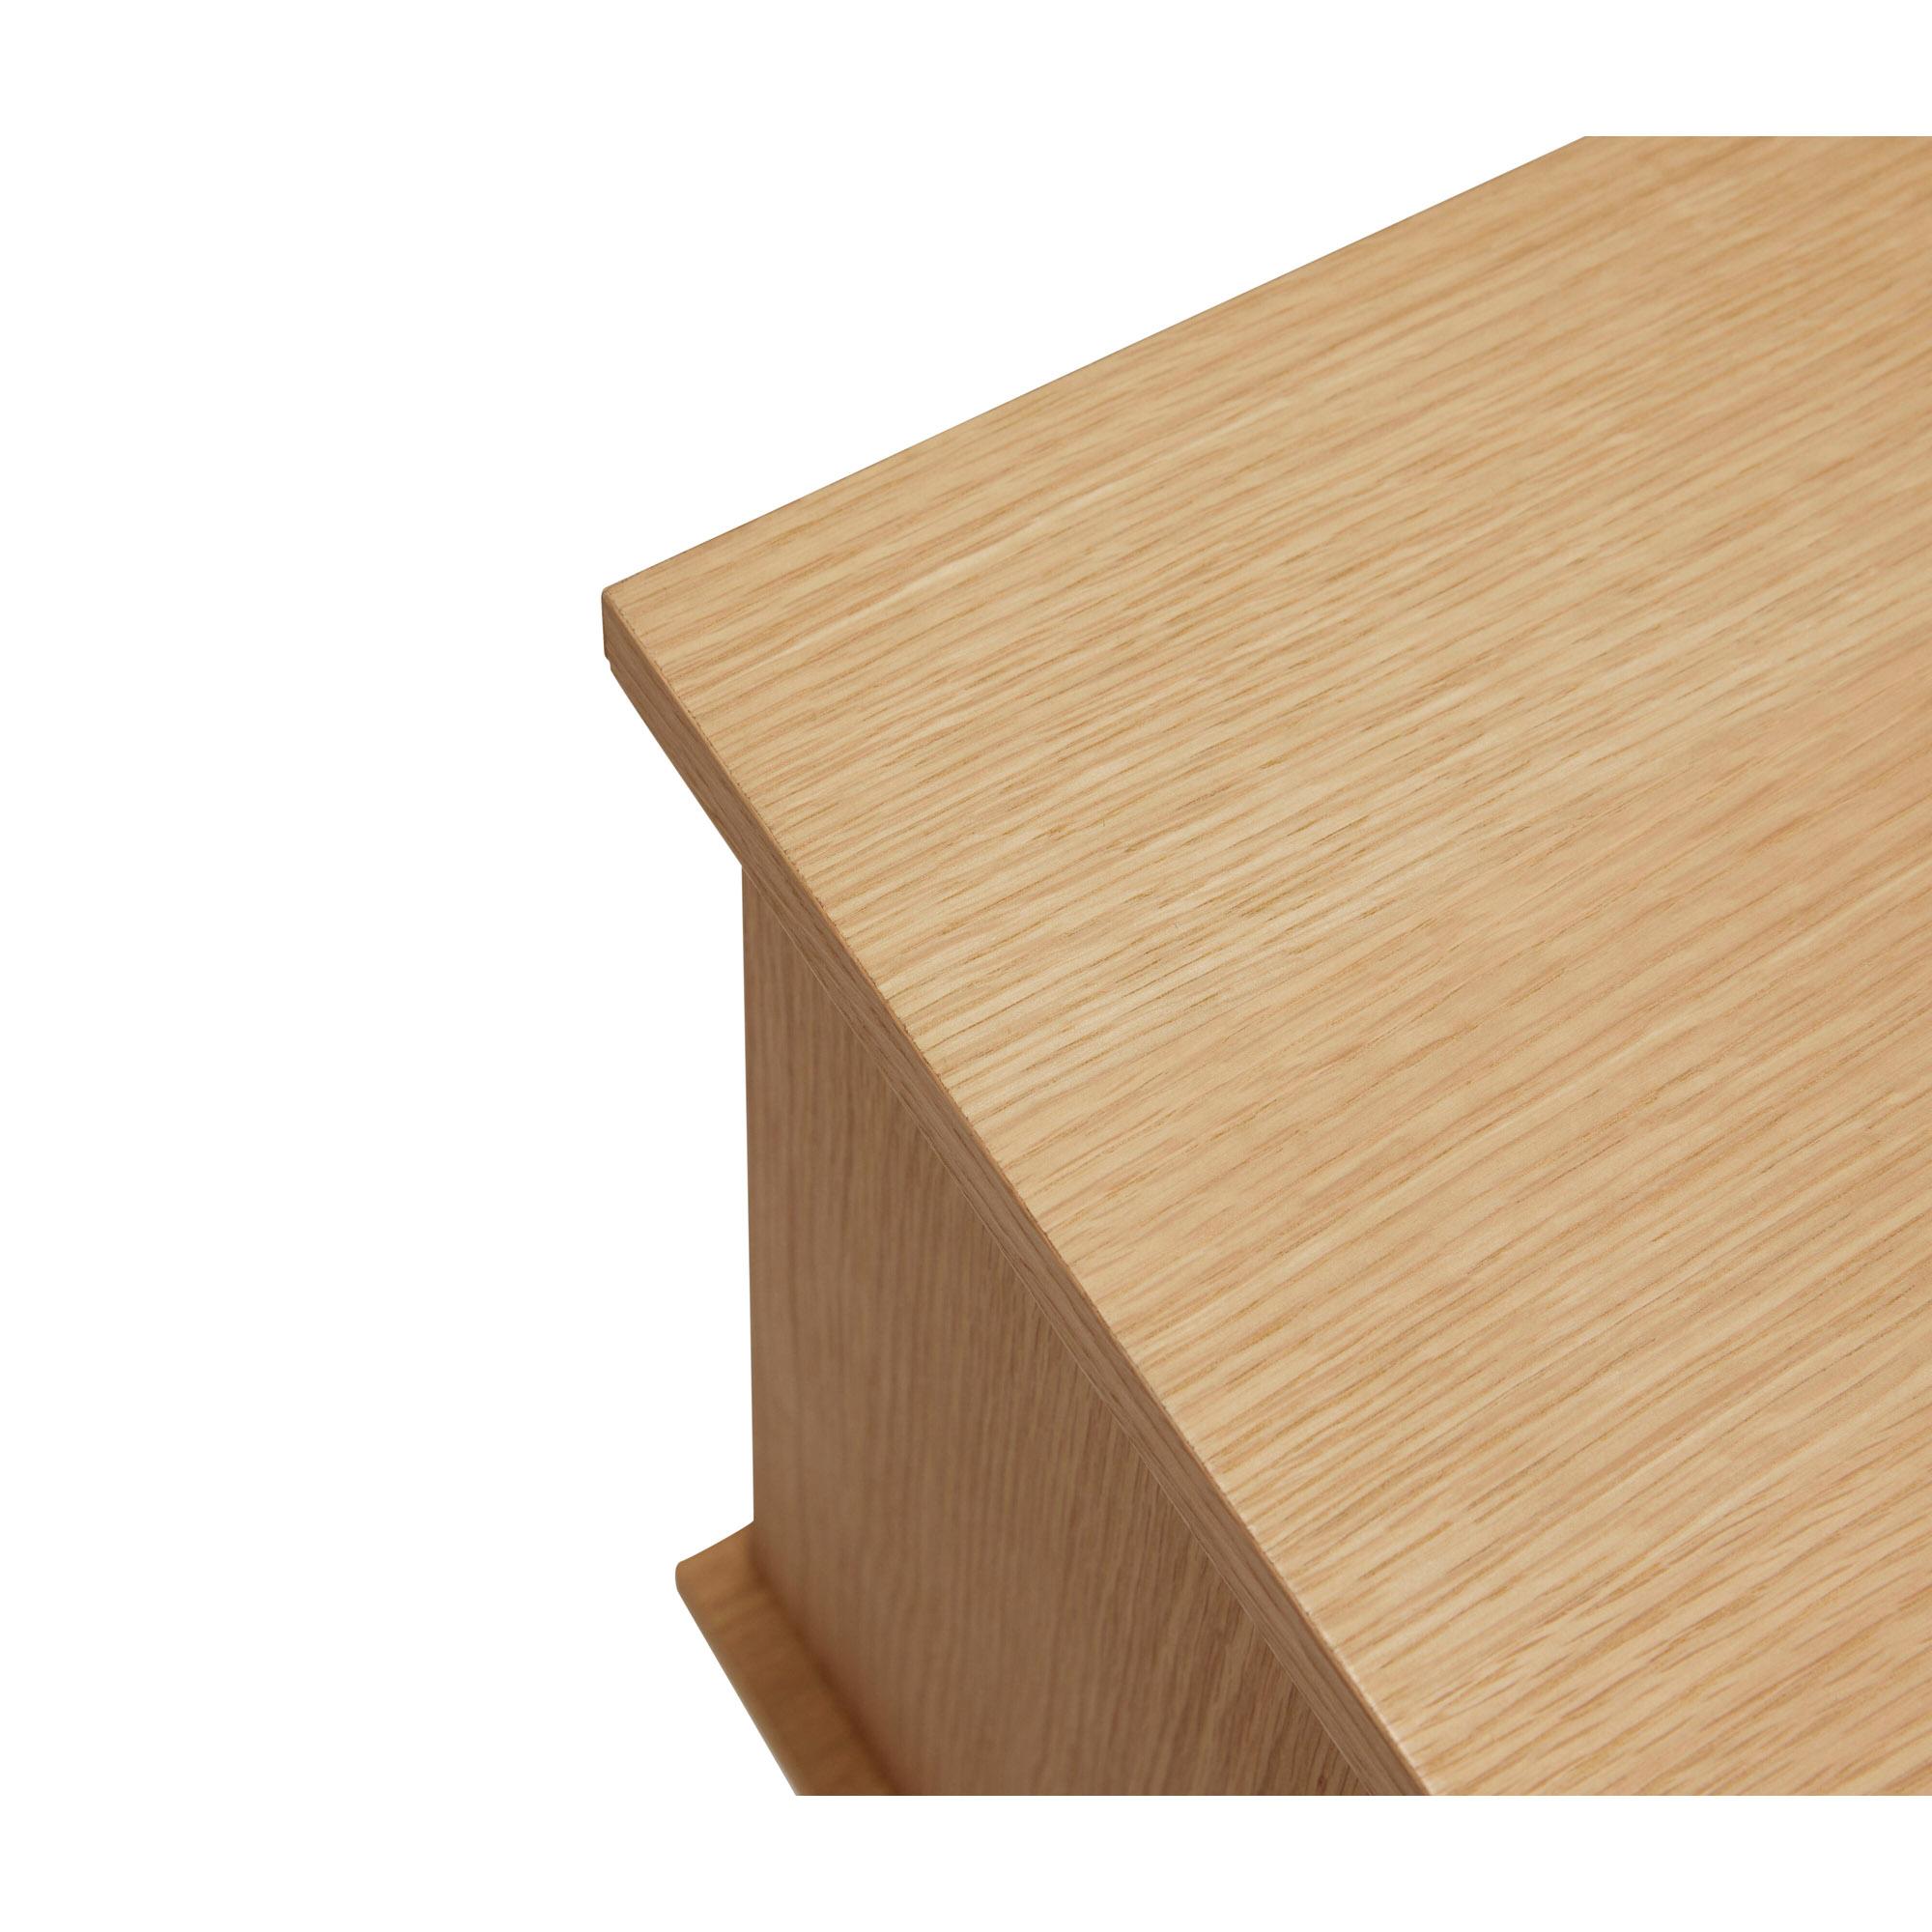  Dash - Konsolbord i egetræ - Dash fra Hübsch Interiør i Egetræsfiner, Egetræ (Varenr: 881503)